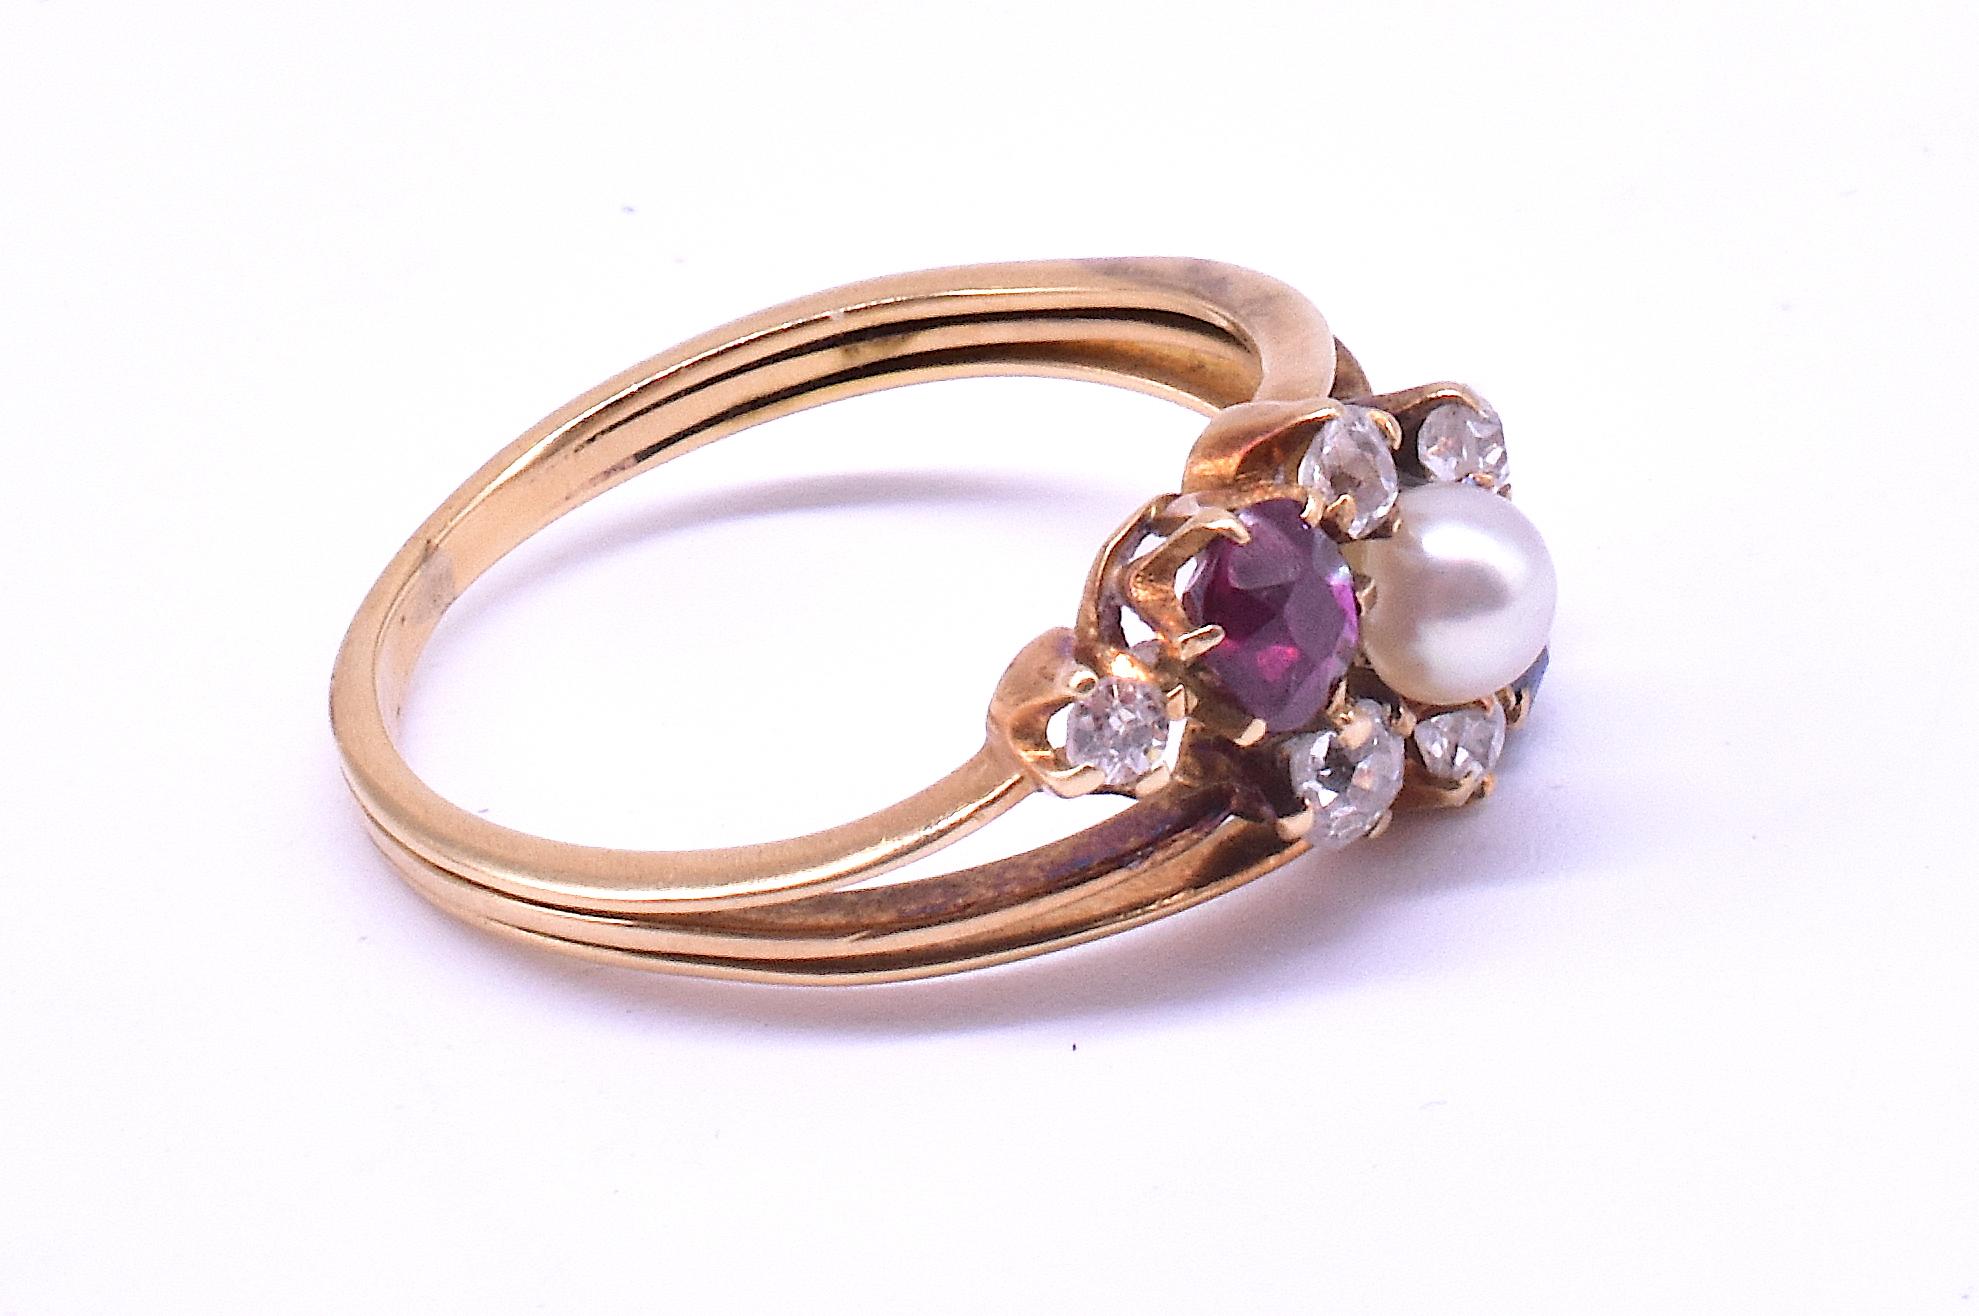 Dieser antike 15-karätige Diamant-, Saphir-, Rubin- und Perlenring aus der Zeit um 1910 gefällt uns wegen seiner starken Kombination von Formen und Farben sowie seiner dynamischen Symmetrie. Der Ring ist diagonal angeordnet, im Gegensatz zu der